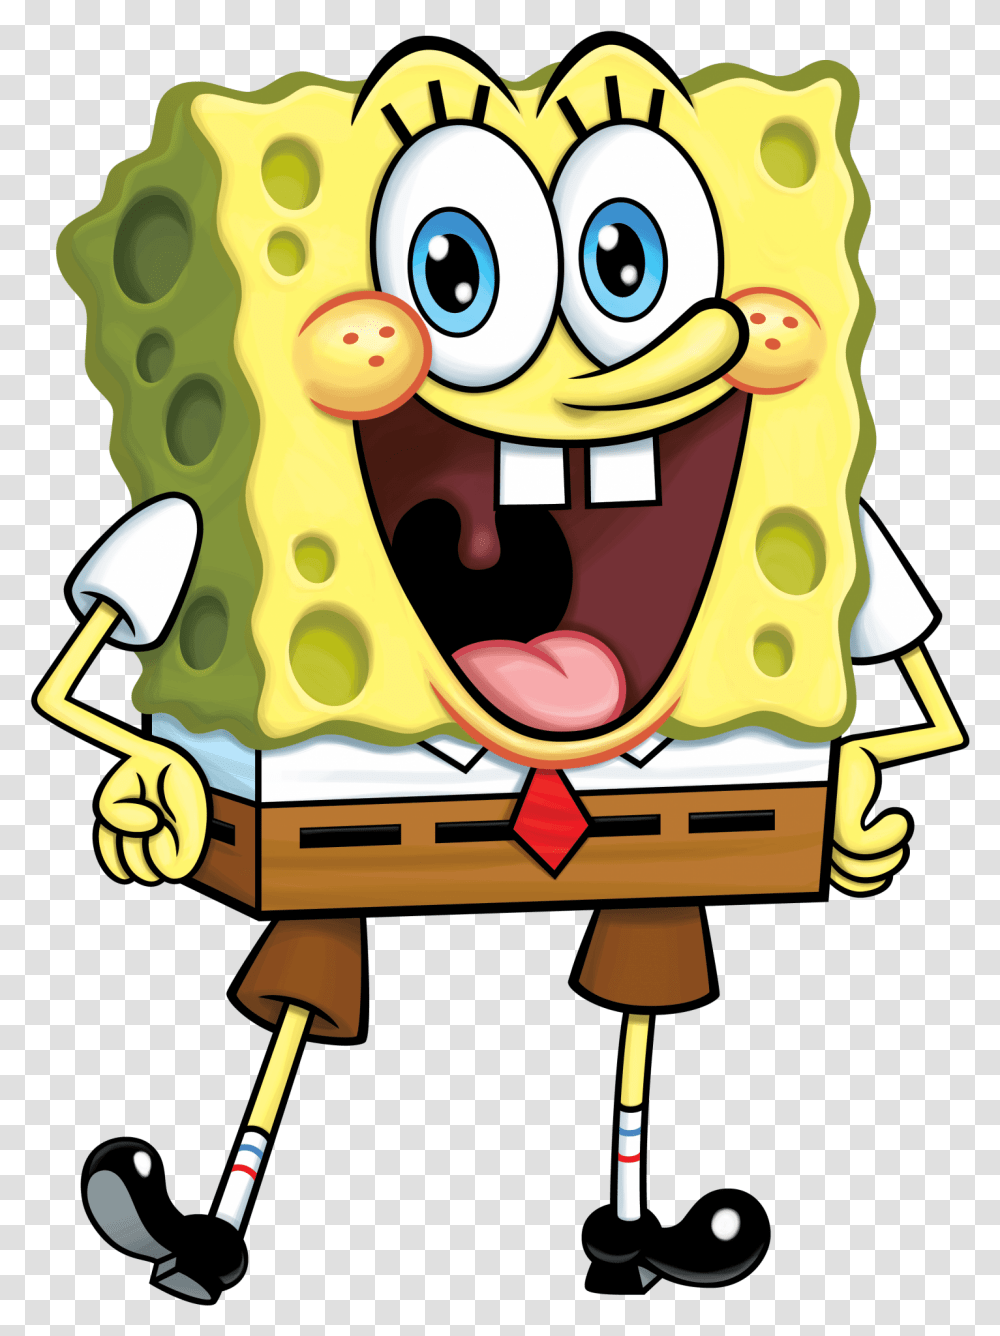 Spongebob Squarepants Character Nickelodeon Fandom Spongebob Squarepants Character, Food, Eating Transparent Png